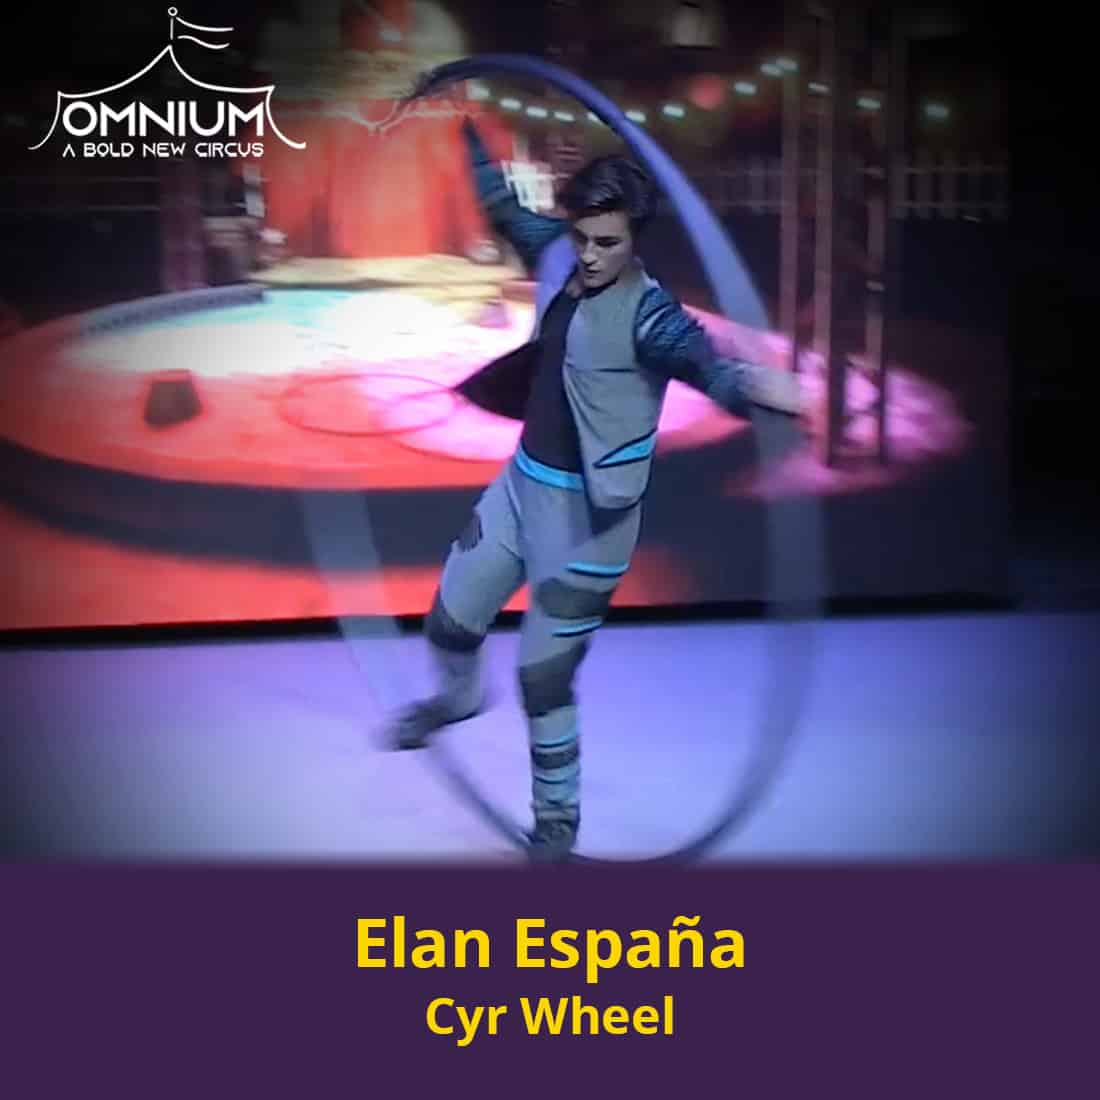 Elan Espana Cyr Wheel